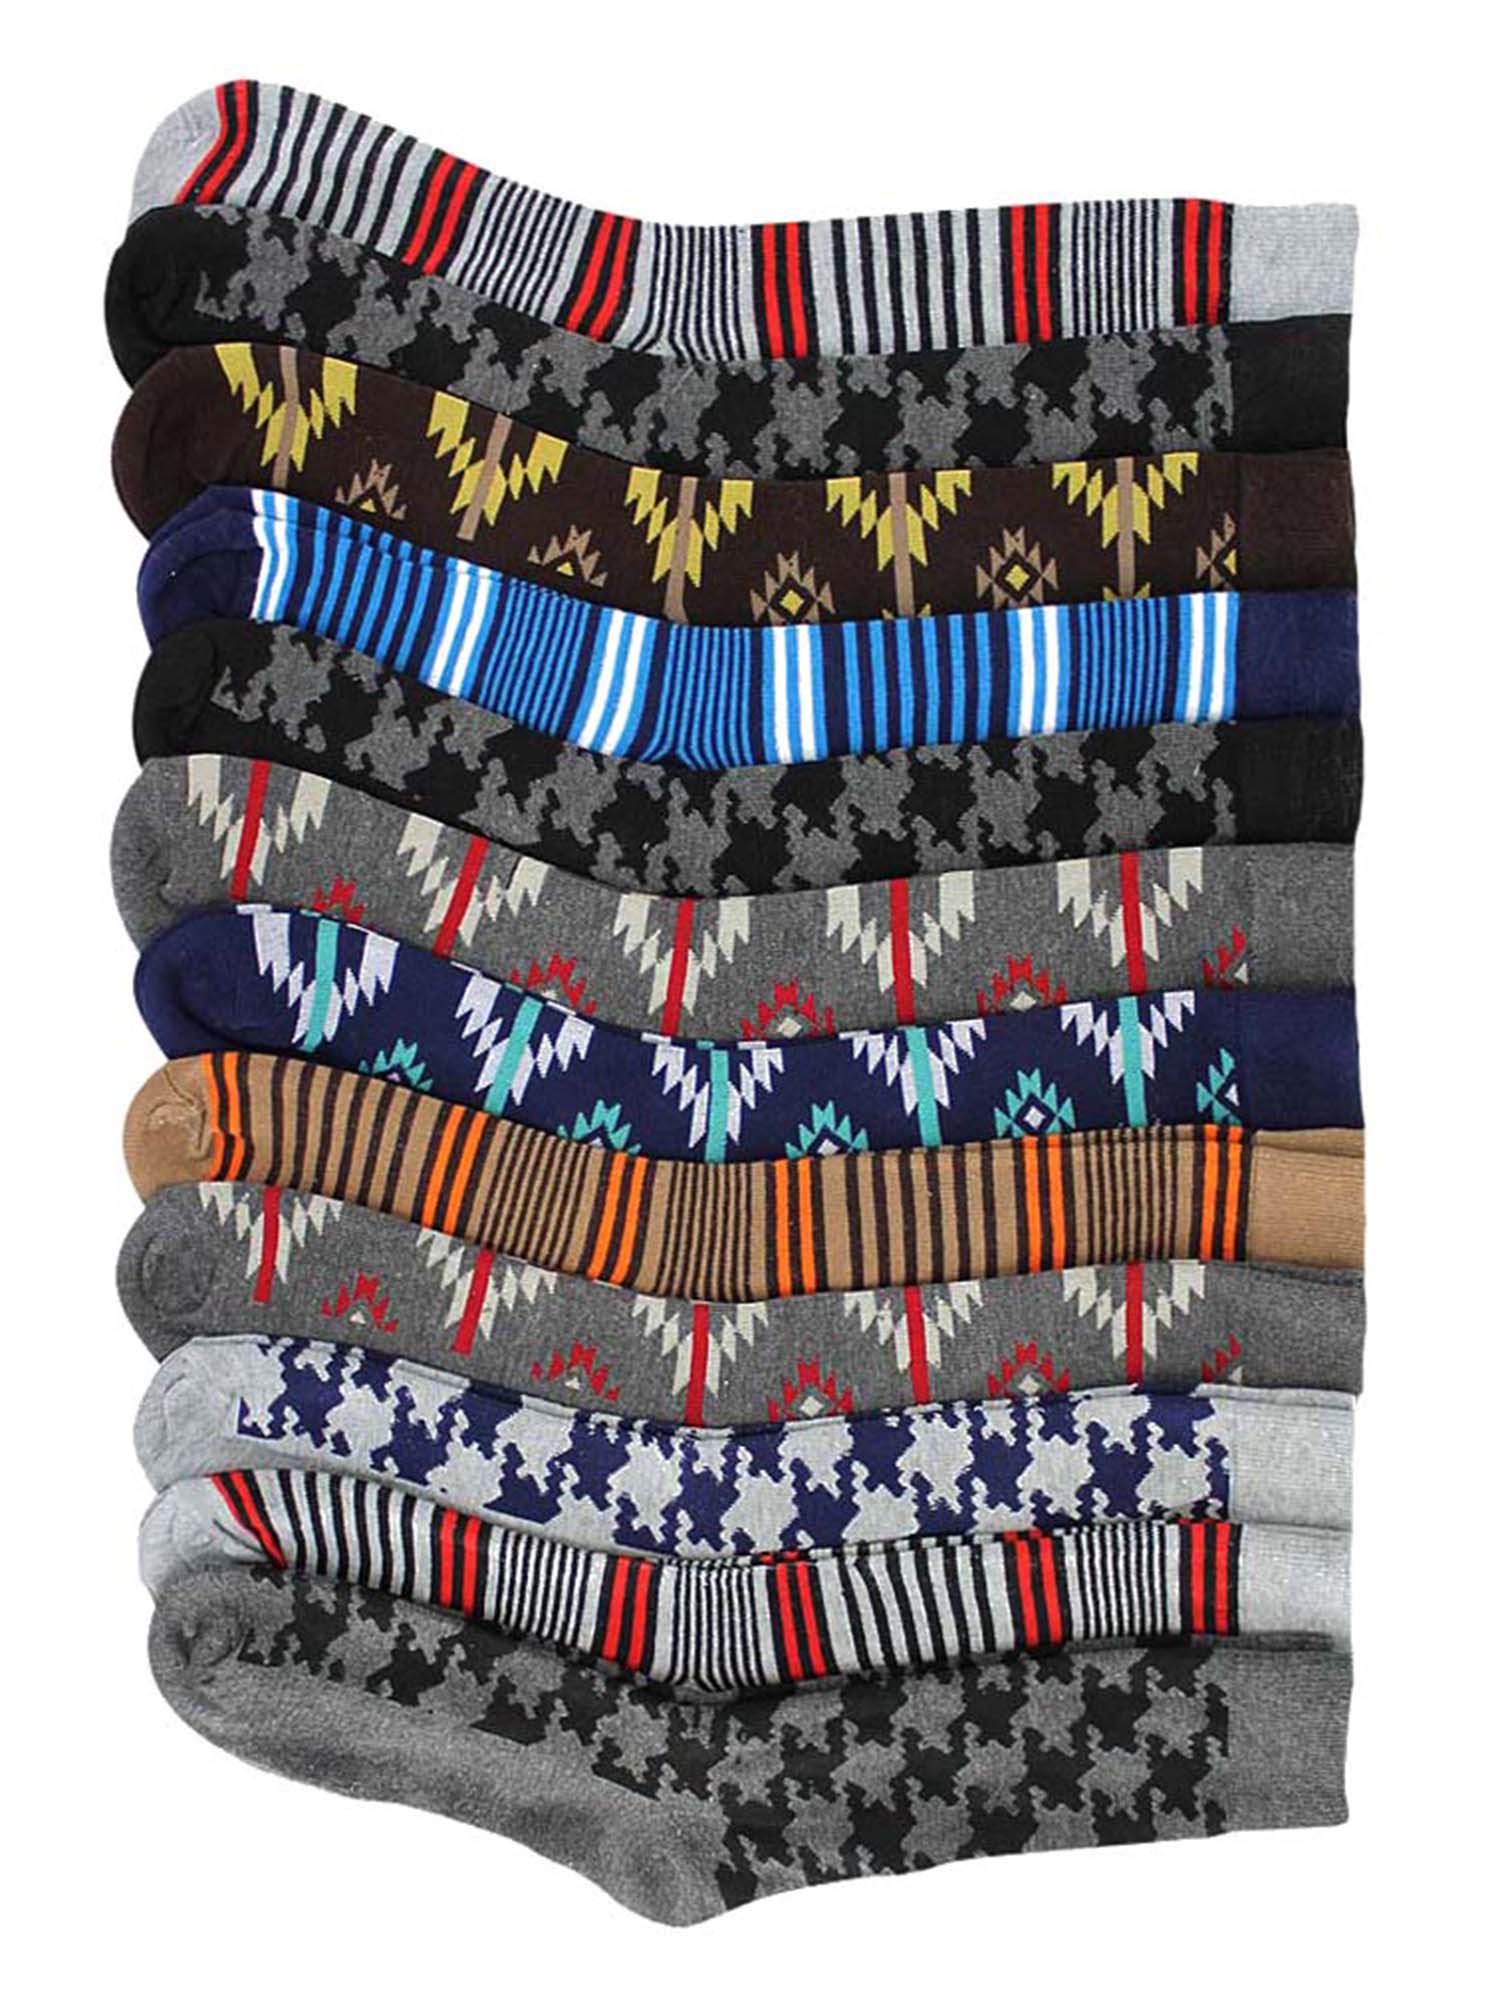 mens striped dress socks